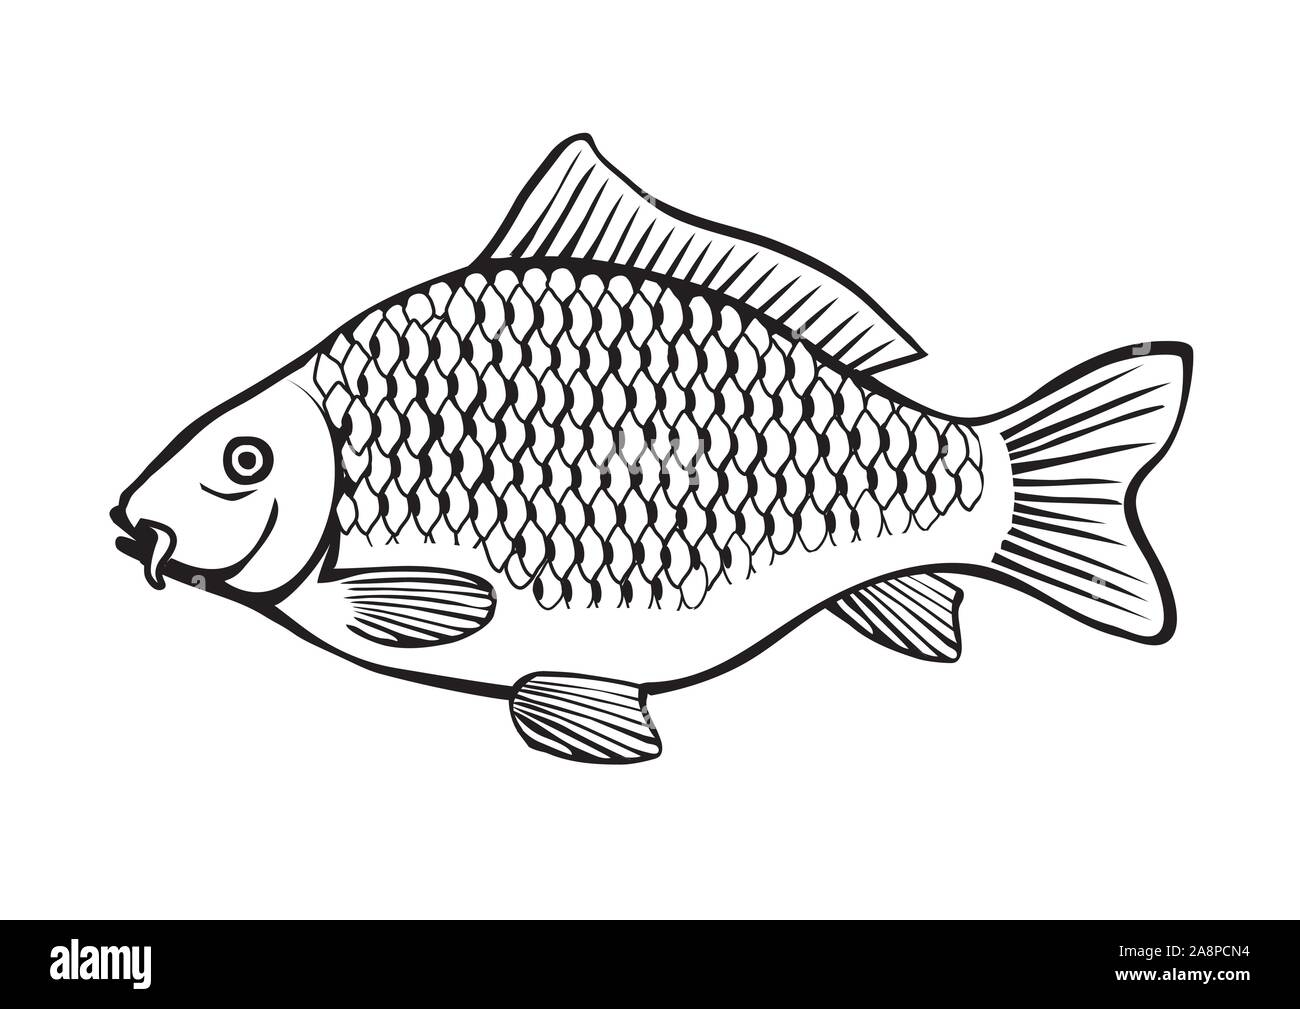 Carpa di illustrazione di pesce. Stilizzata in bianco e nero illustrazione della carpa. Isolato su sfondo bianco. Vettore disponibile. Illustrazione Vettoriale